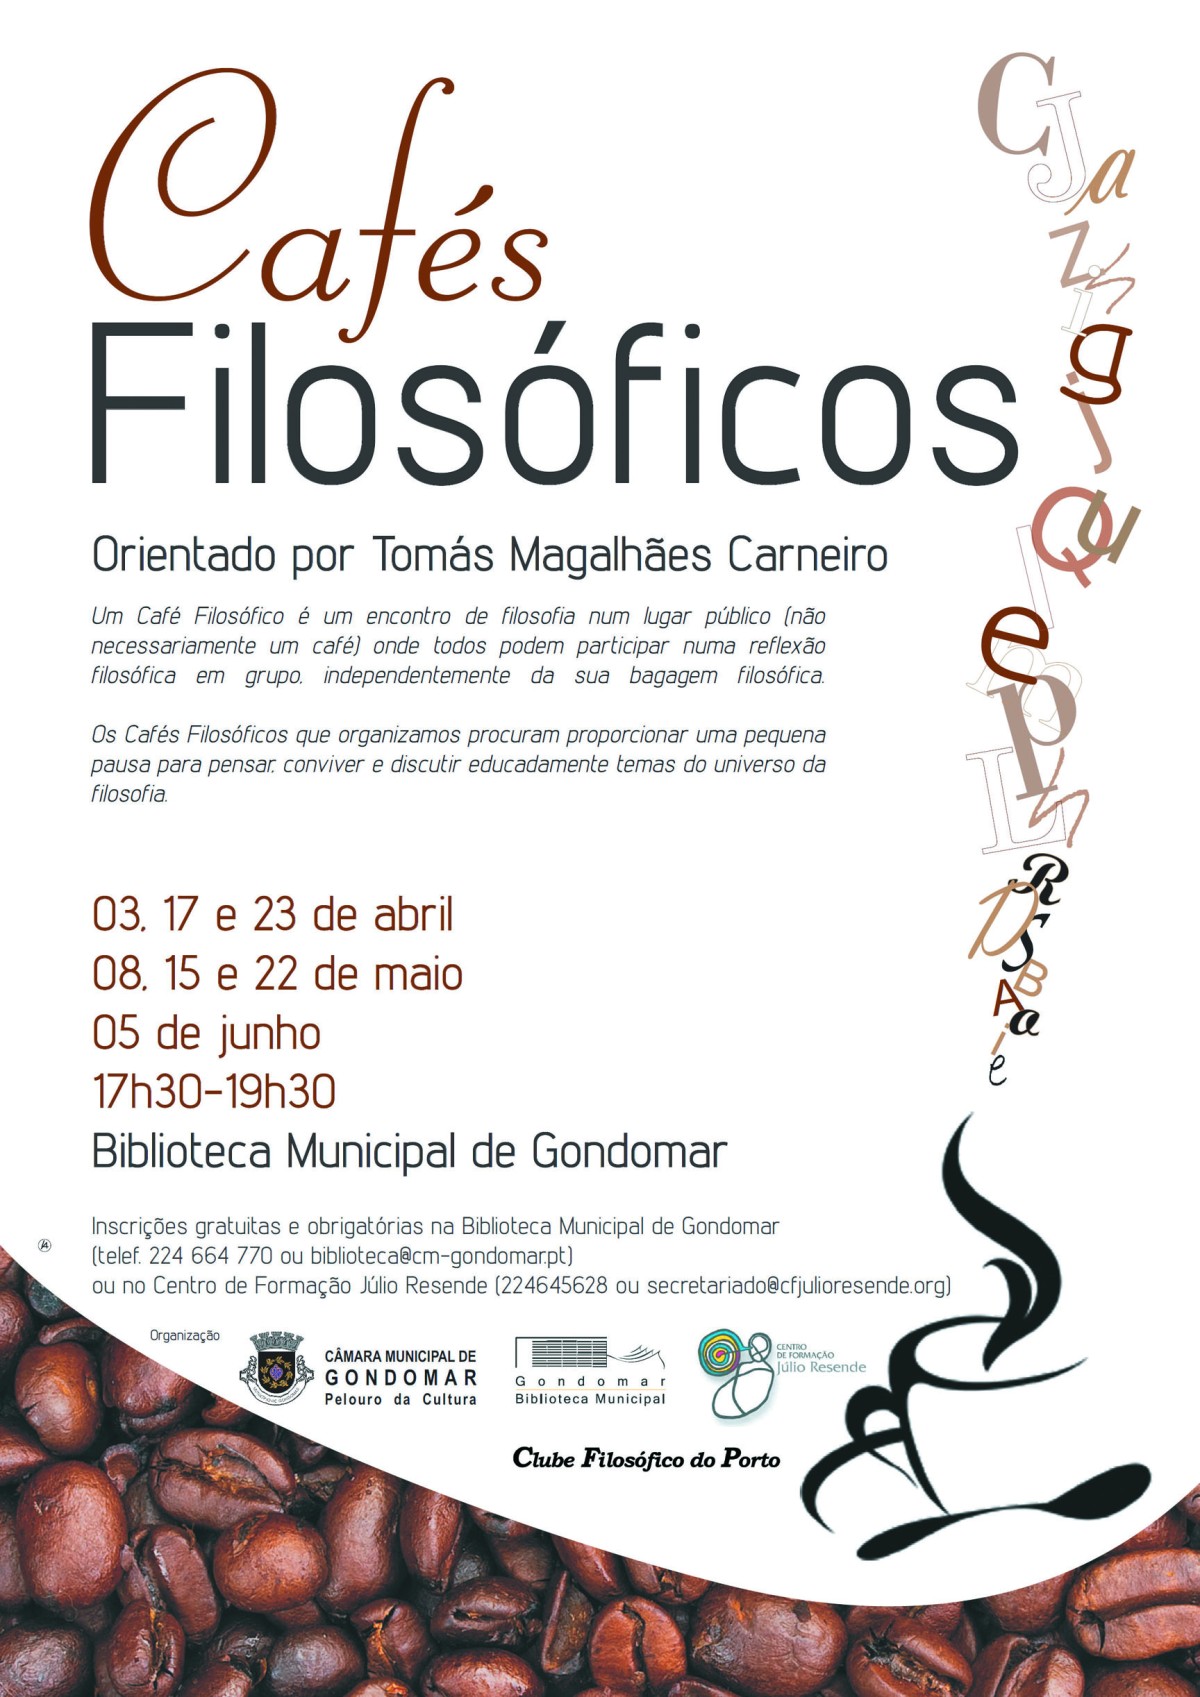 Cartaz_Cafés_Filosóficos_Gondomar_2013